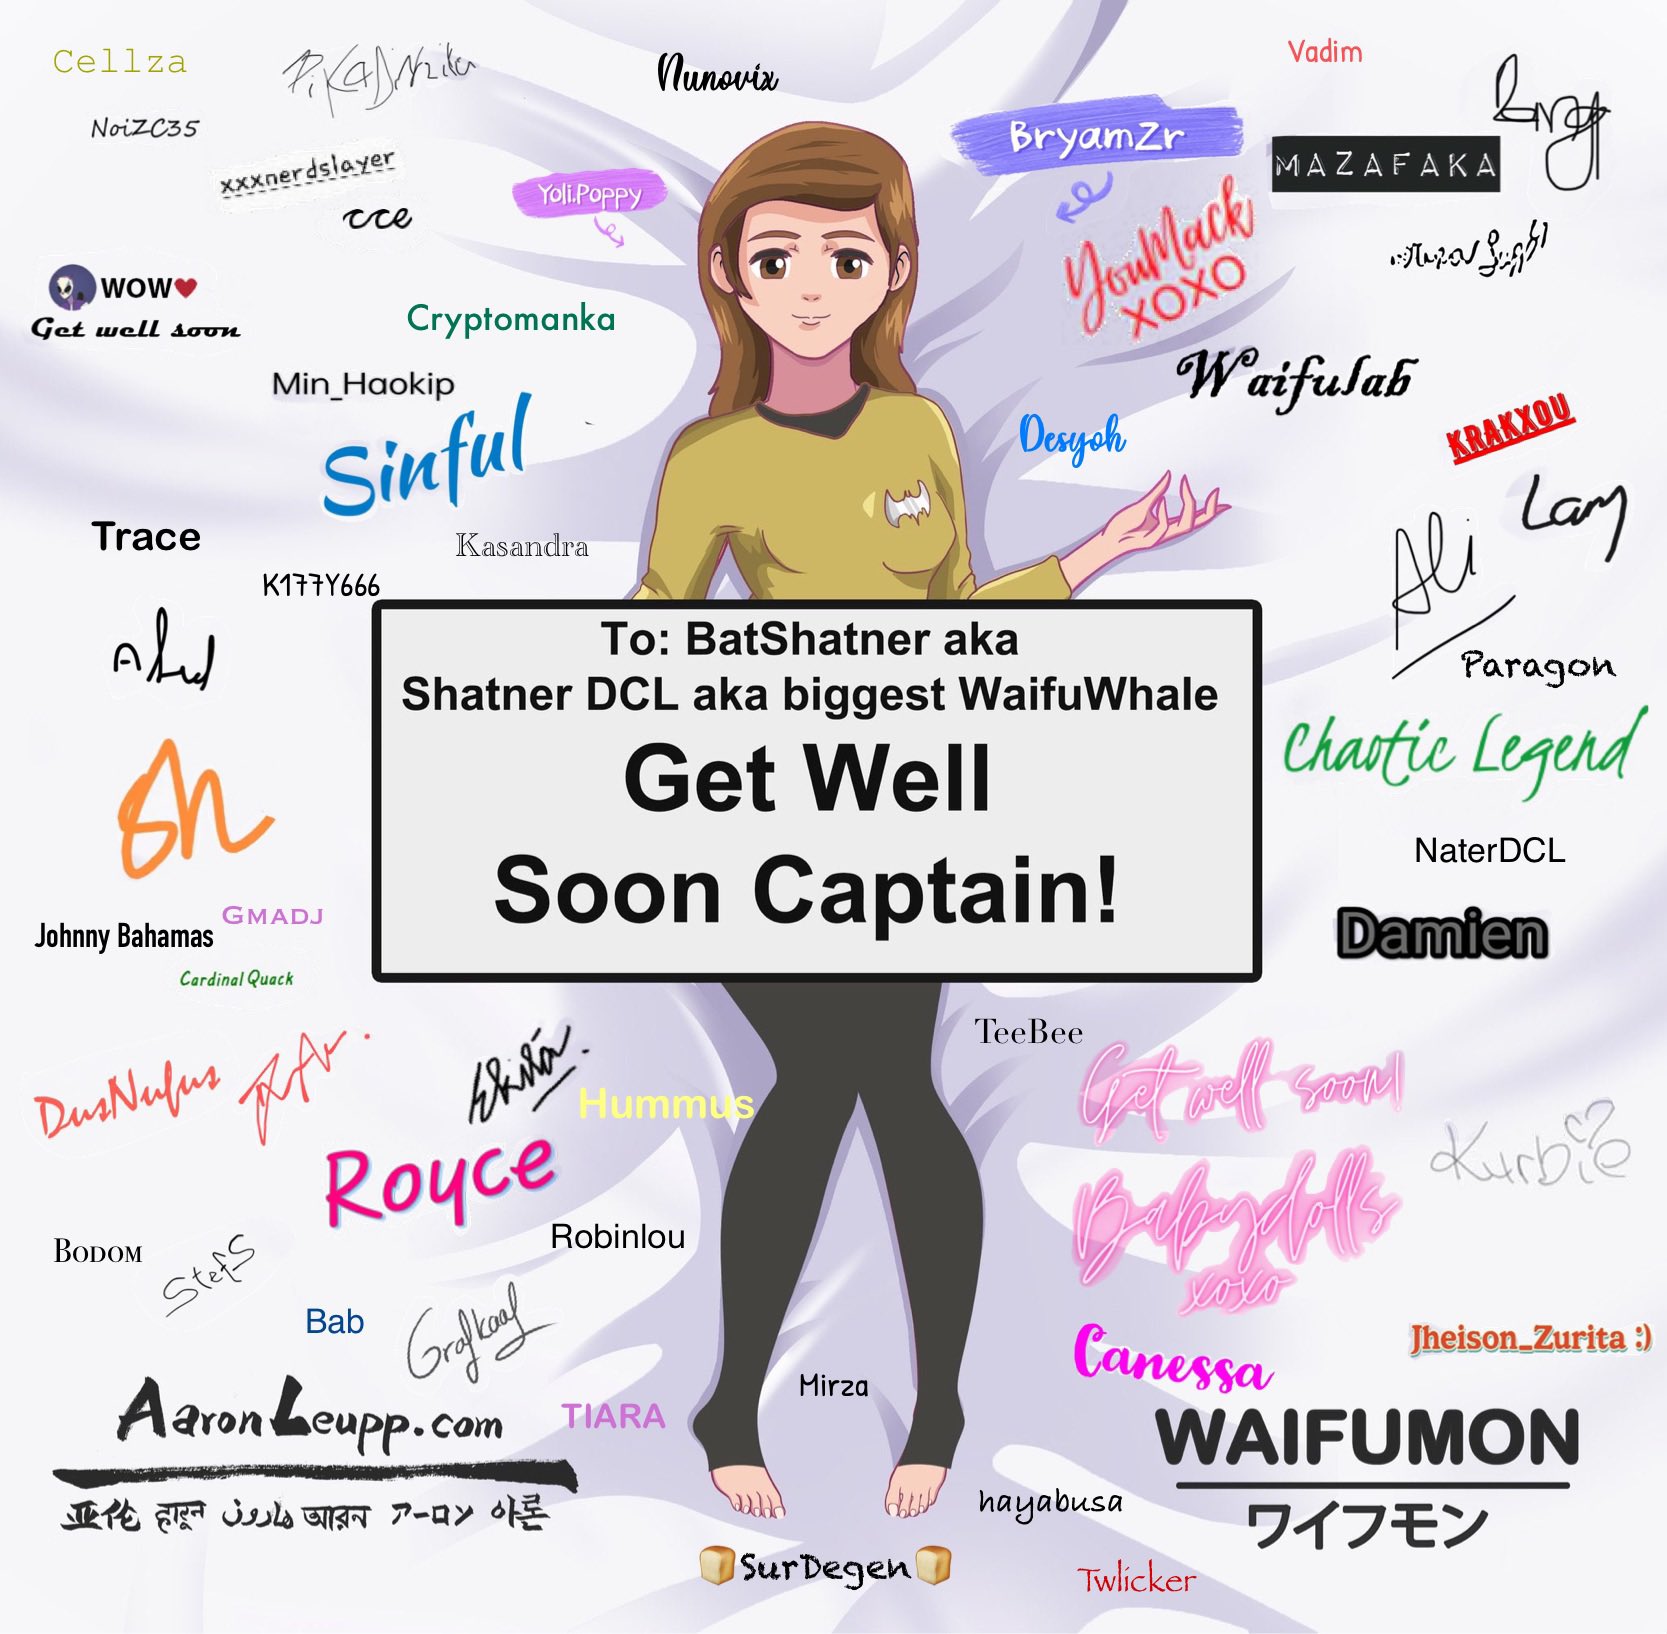 Get Well Soon Captain! - Waifumon